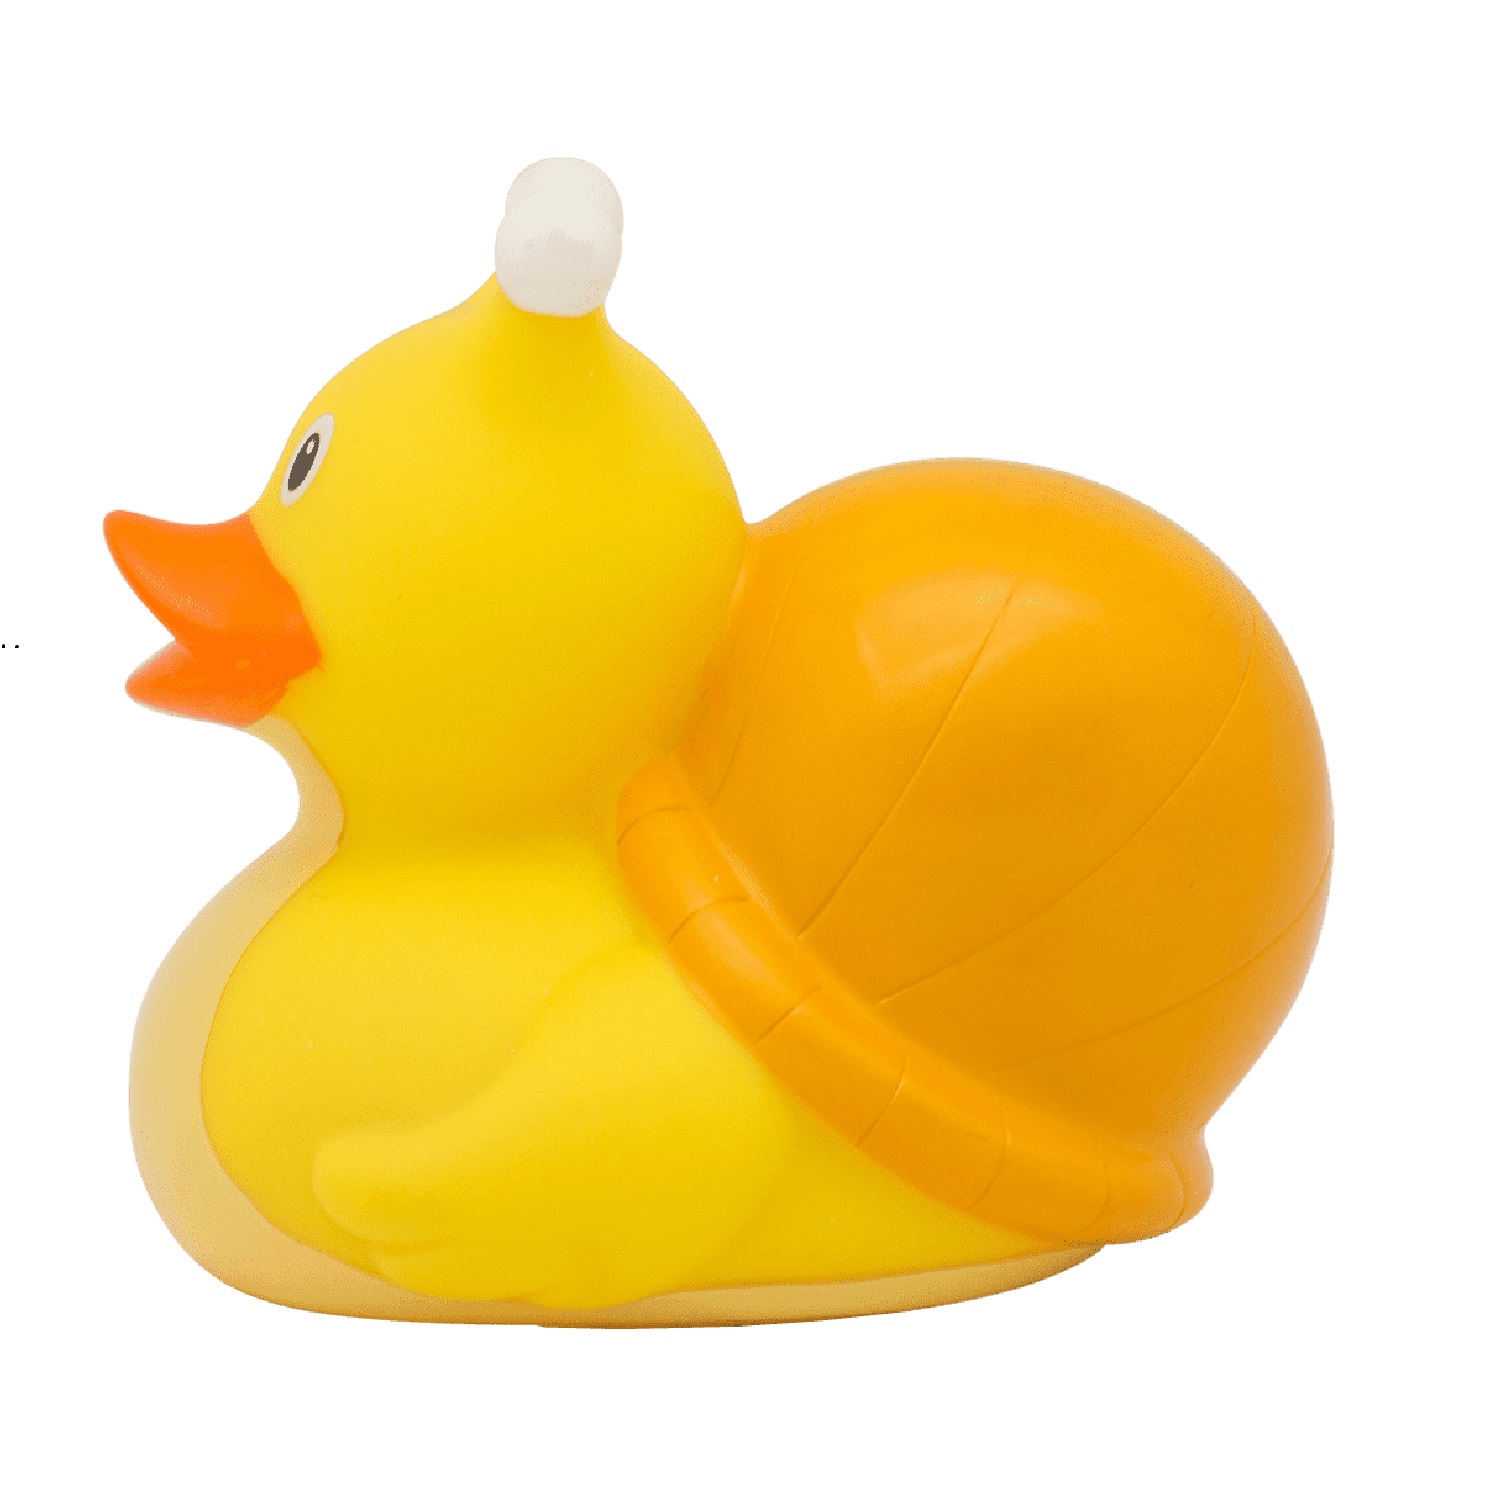 Игрушка Funny ducks для ванной Улитка уточка 1219 - фото 4